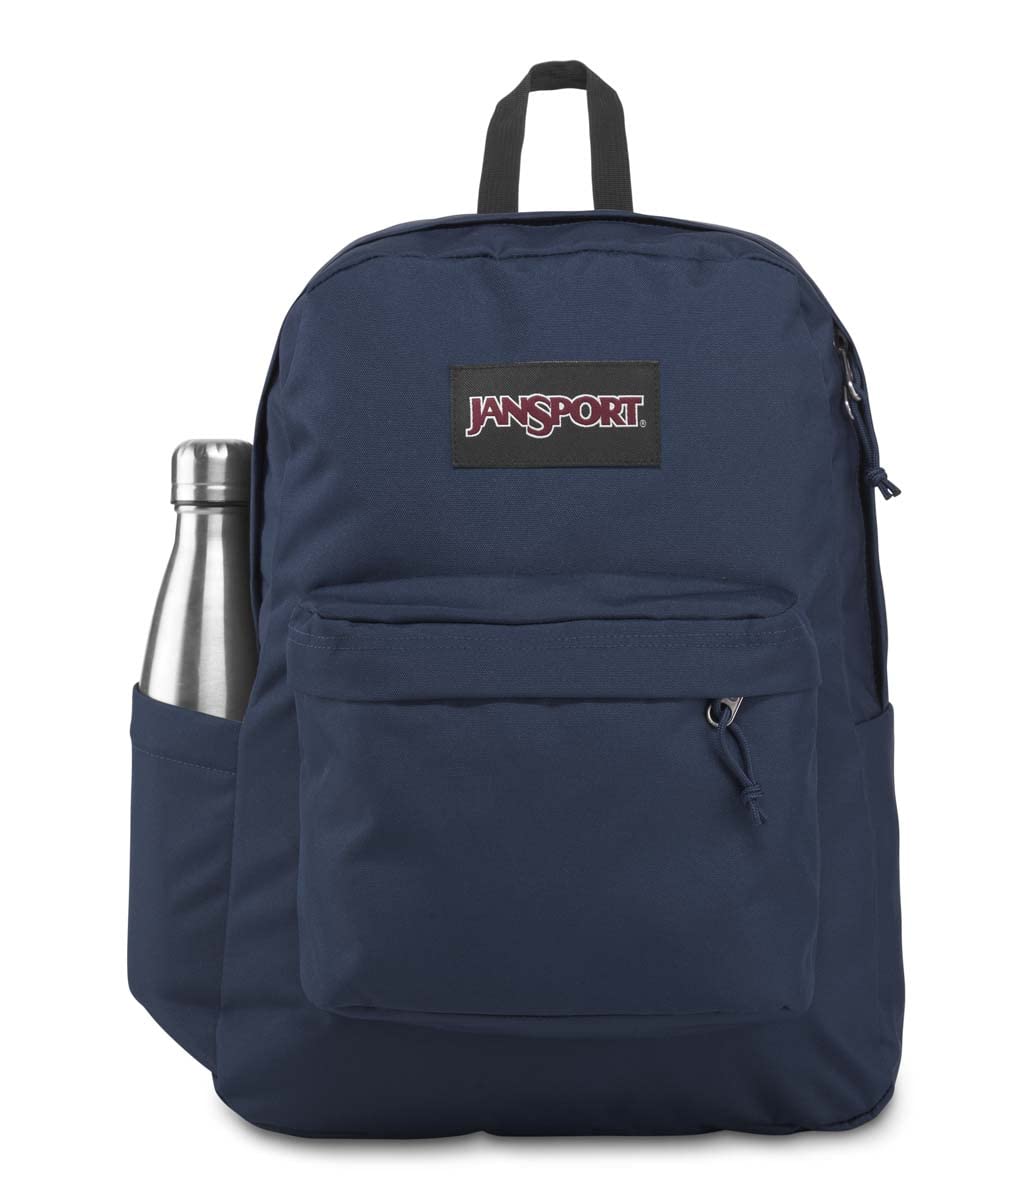 JanSport Superbreak Plus Backpack - Work, Travel, or Laptop Bookbag with Water Bottle Pocket, Navy